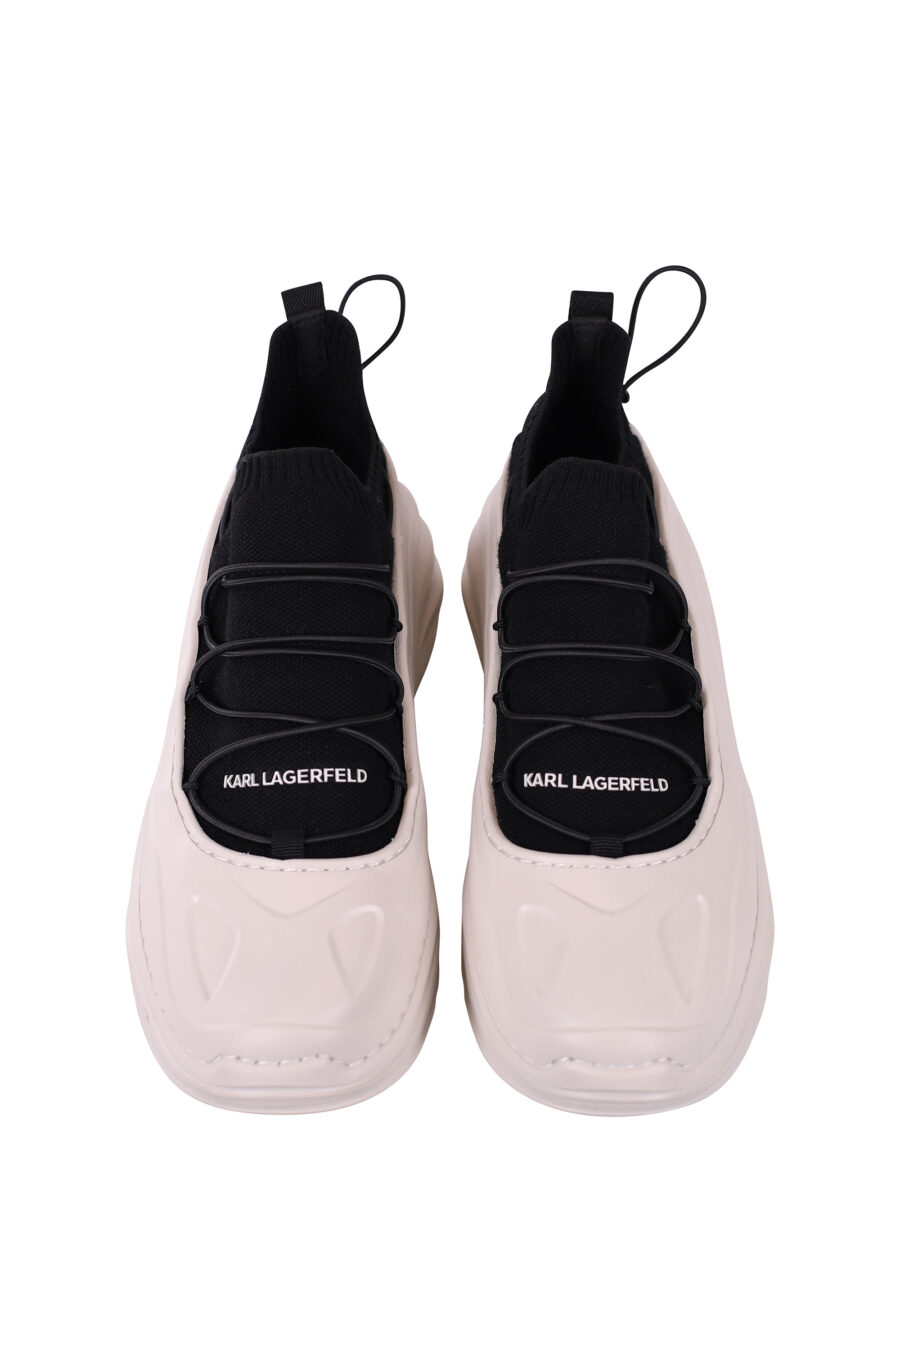 Zapatillas bicolor blancas y negras con suela blanca ondulada - IMG 5651